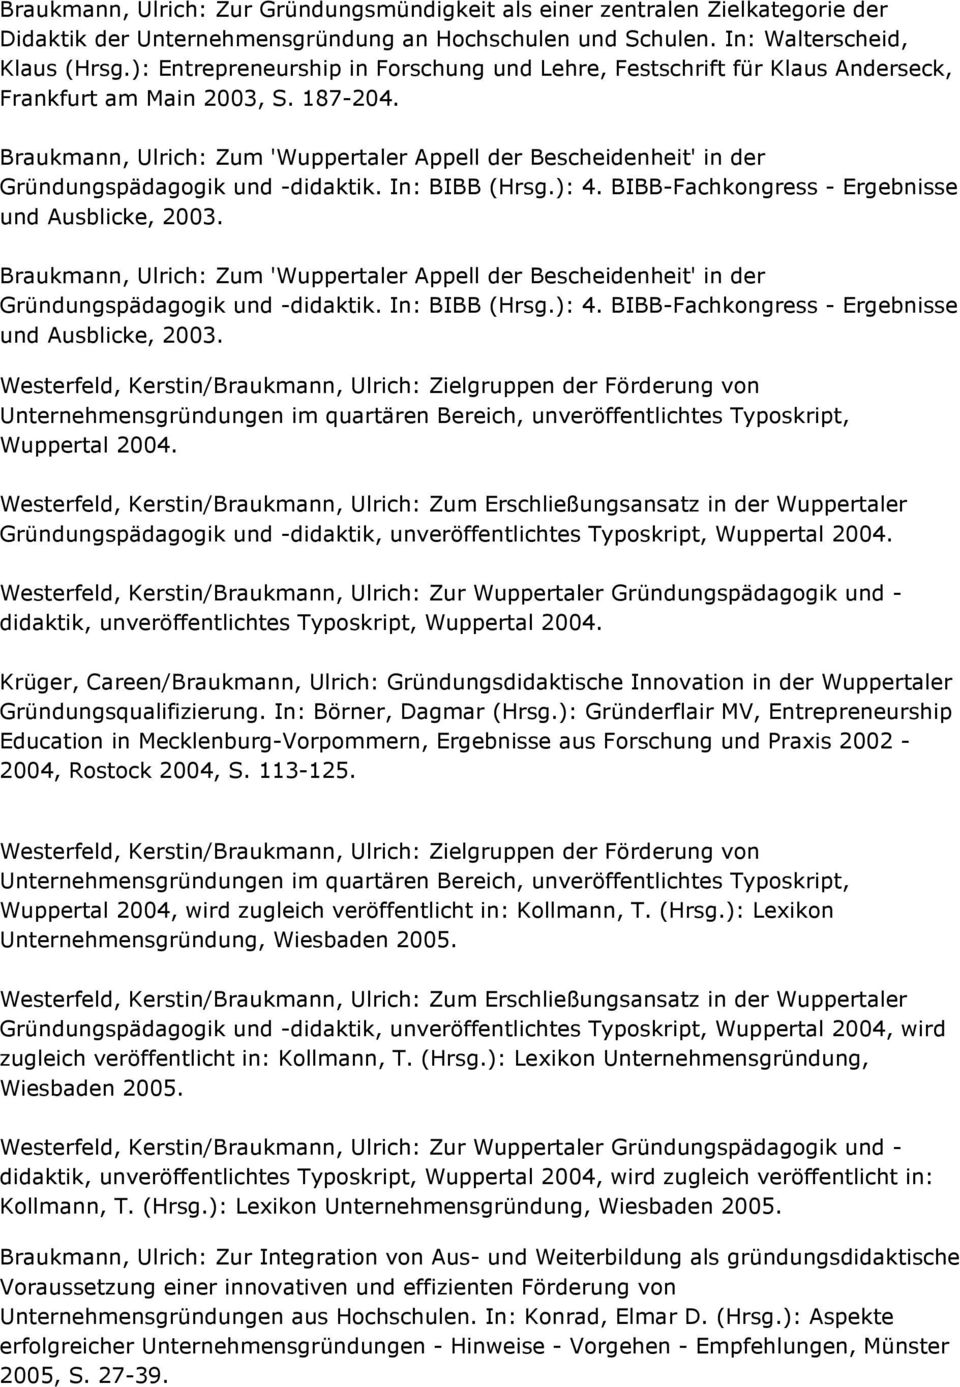 Braukmann, Ulrich: Zum 'Wuppertaler Appell der Bescheidenheit' in der Gründungspädagogik und -didaktik. In: BIBB (Hrsg.): 4. BIBB-Fachkongress - Ergebnisse und Ausblicke, 2003.